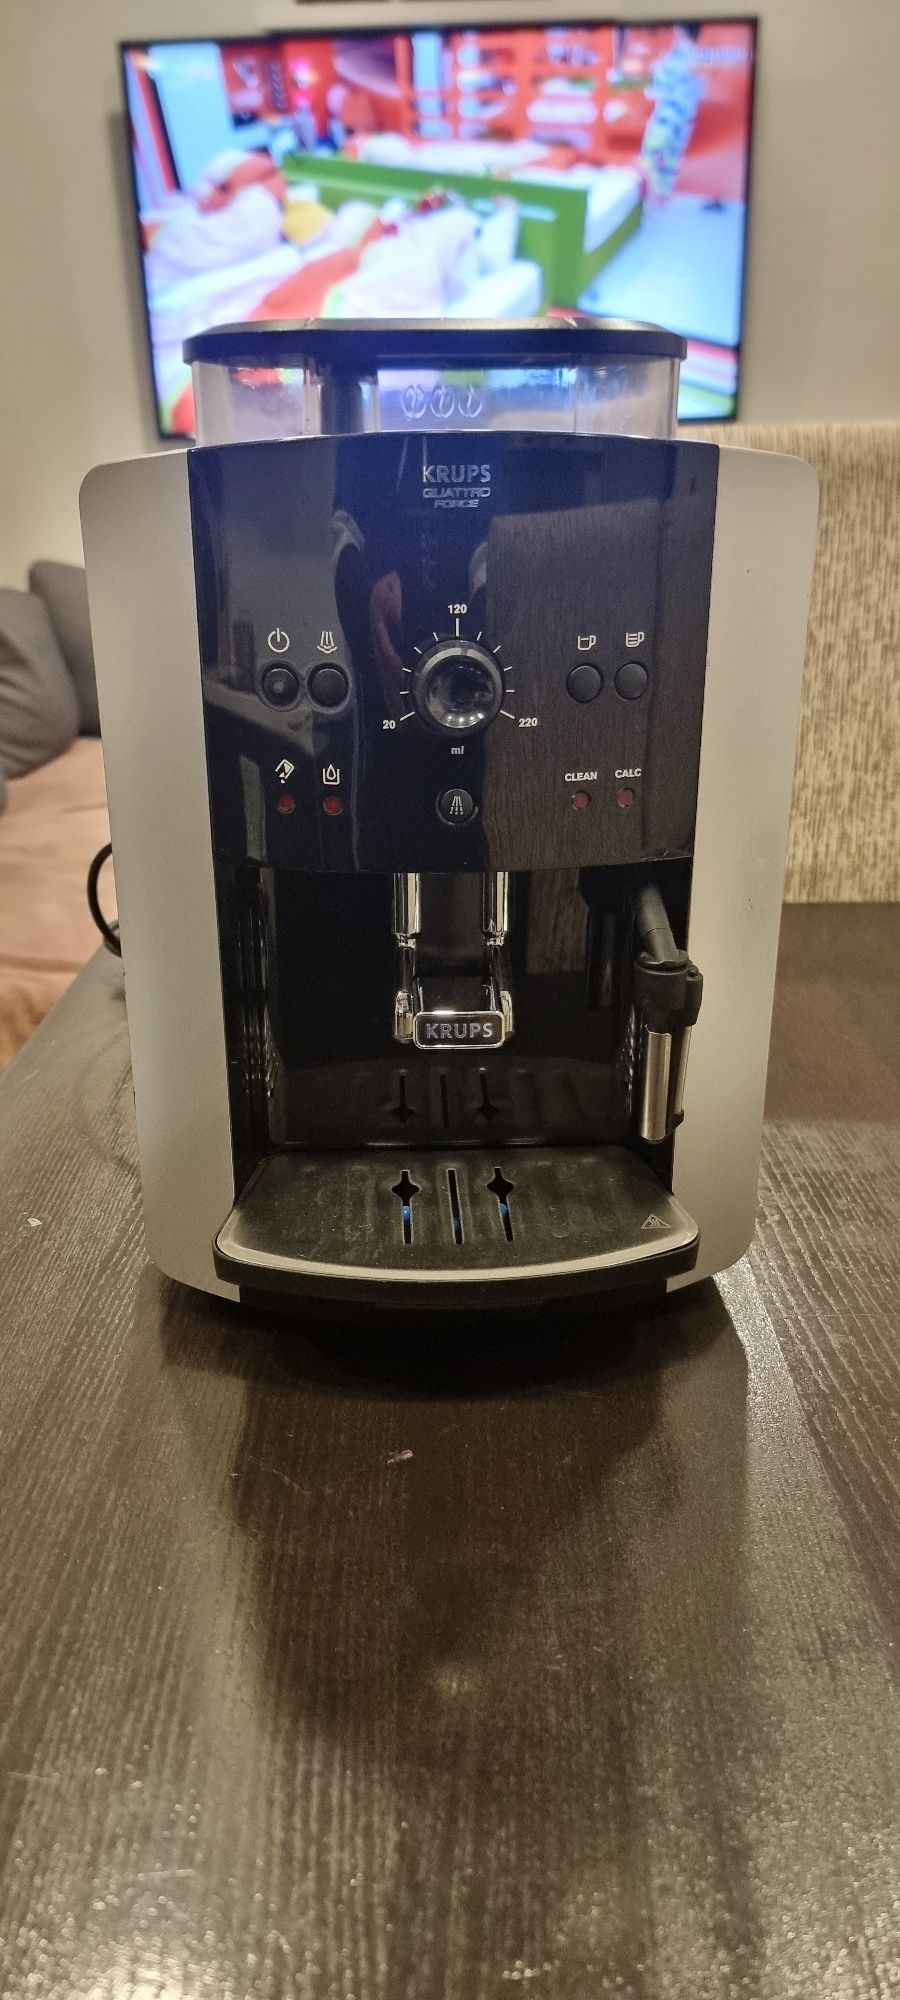 Maquina cafe automática krups